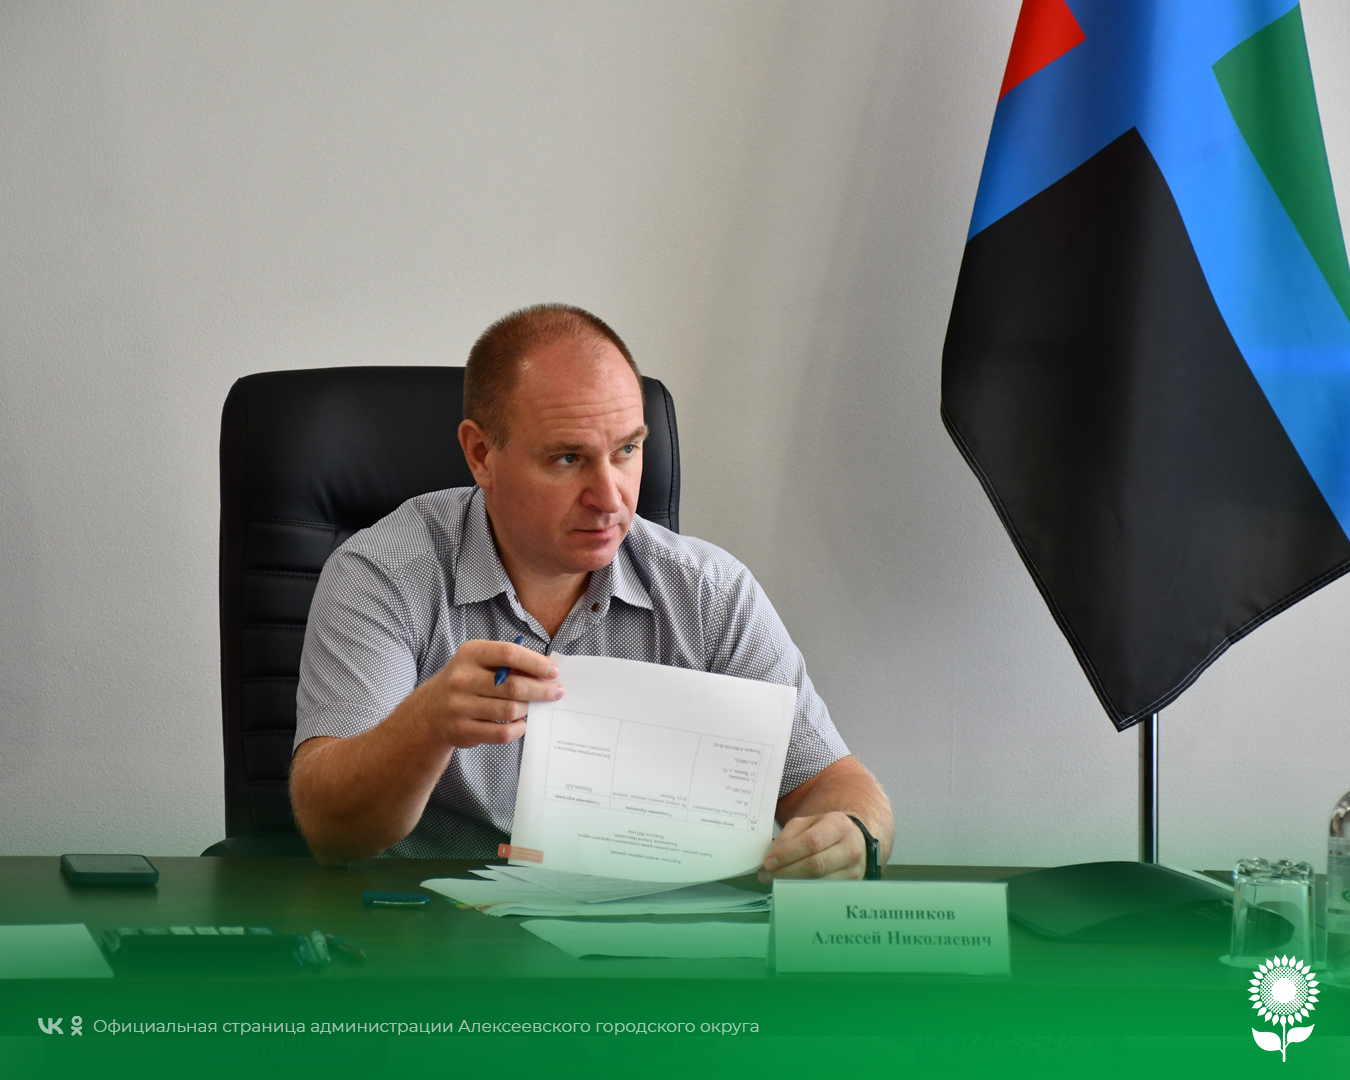 Сегодня глава администрации Алексеевского городского округа Алексей Николаевич Калашников провёл личный приём граждан.